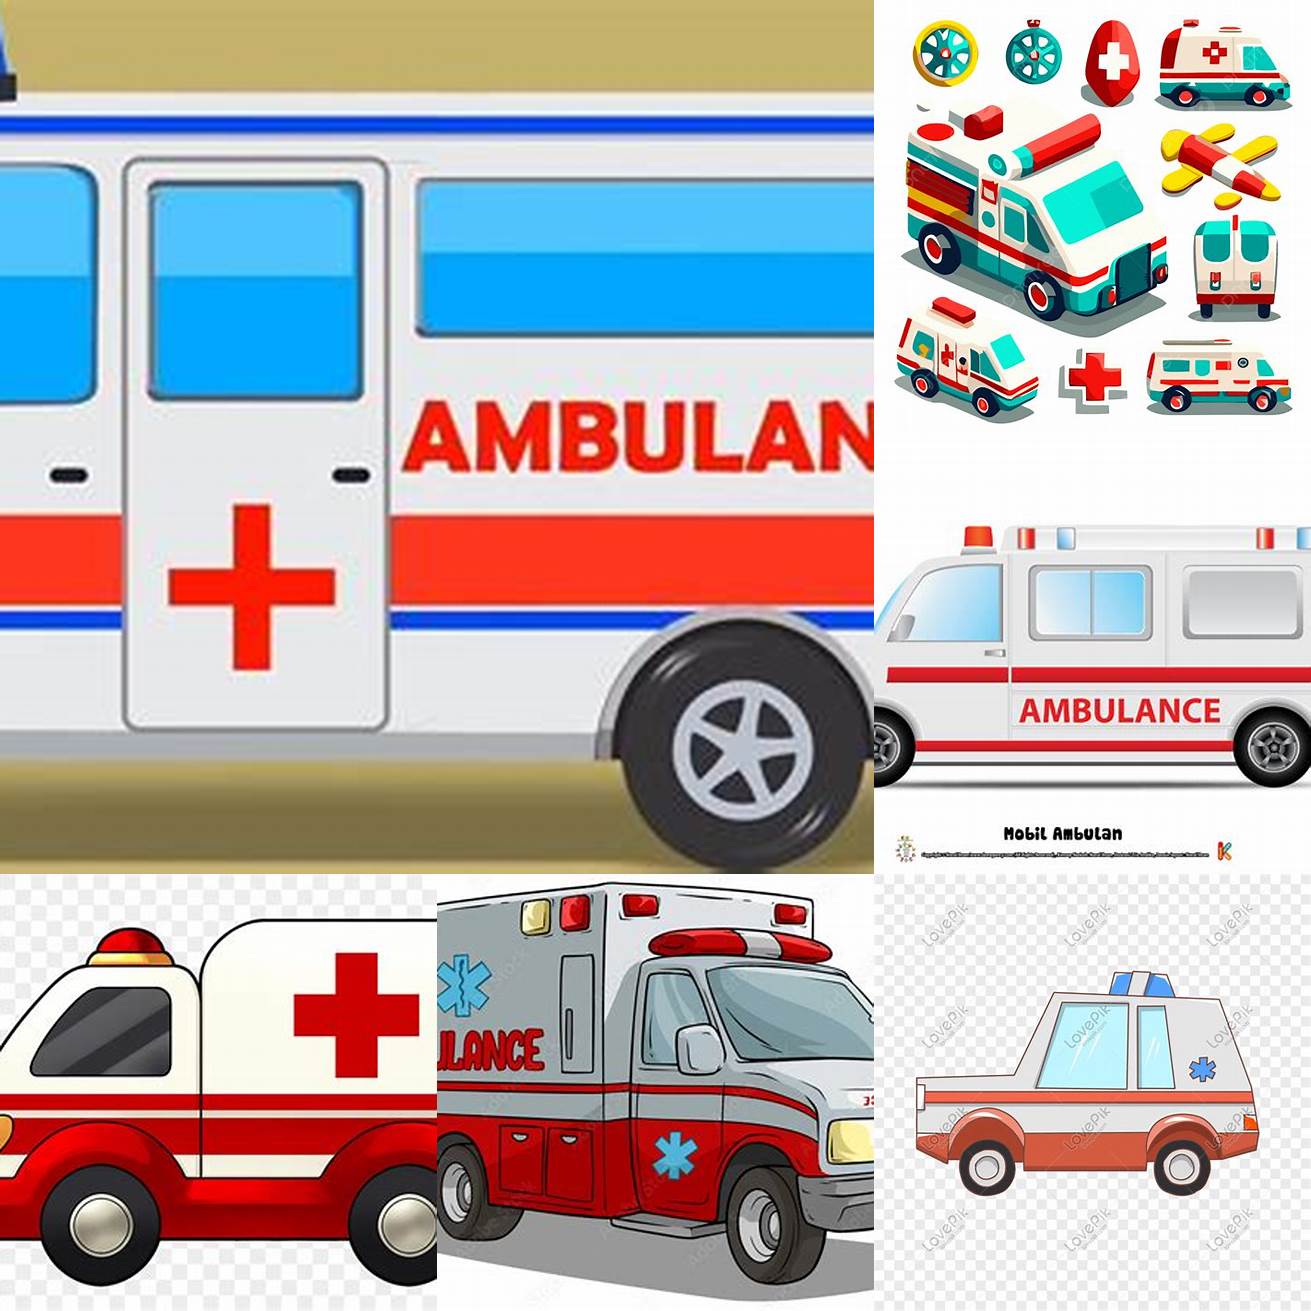 Mobil ambulance kartun dengan ukuran yang berbeda